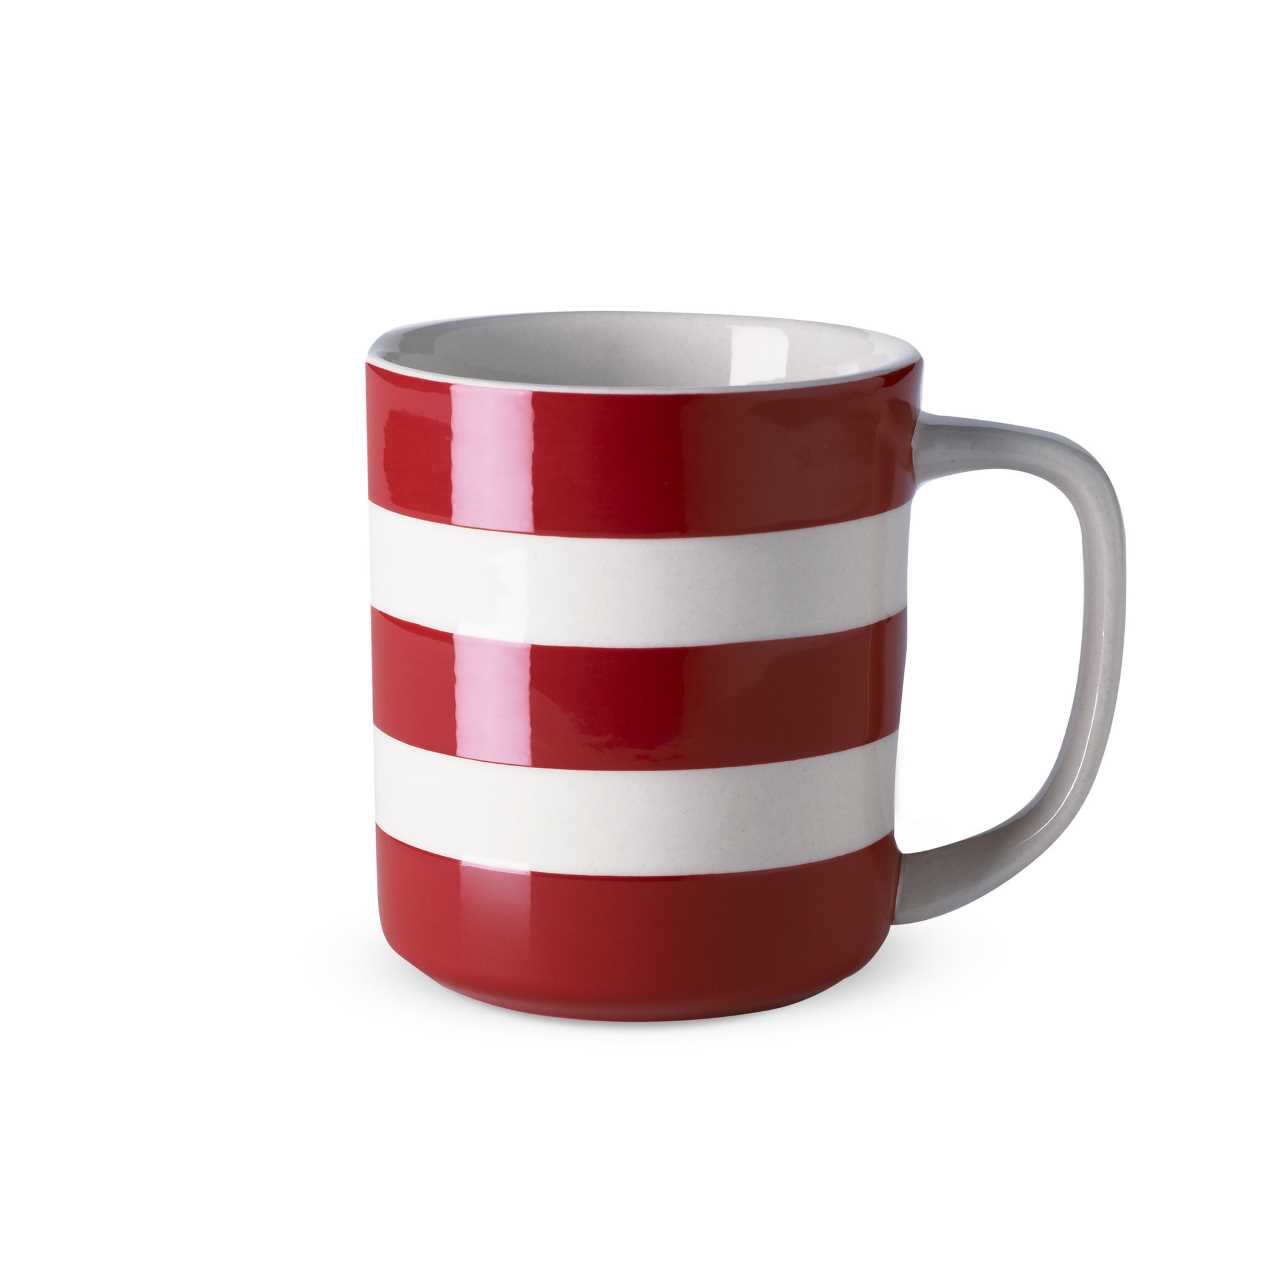 Cornishware Pottery Mug in red stripes